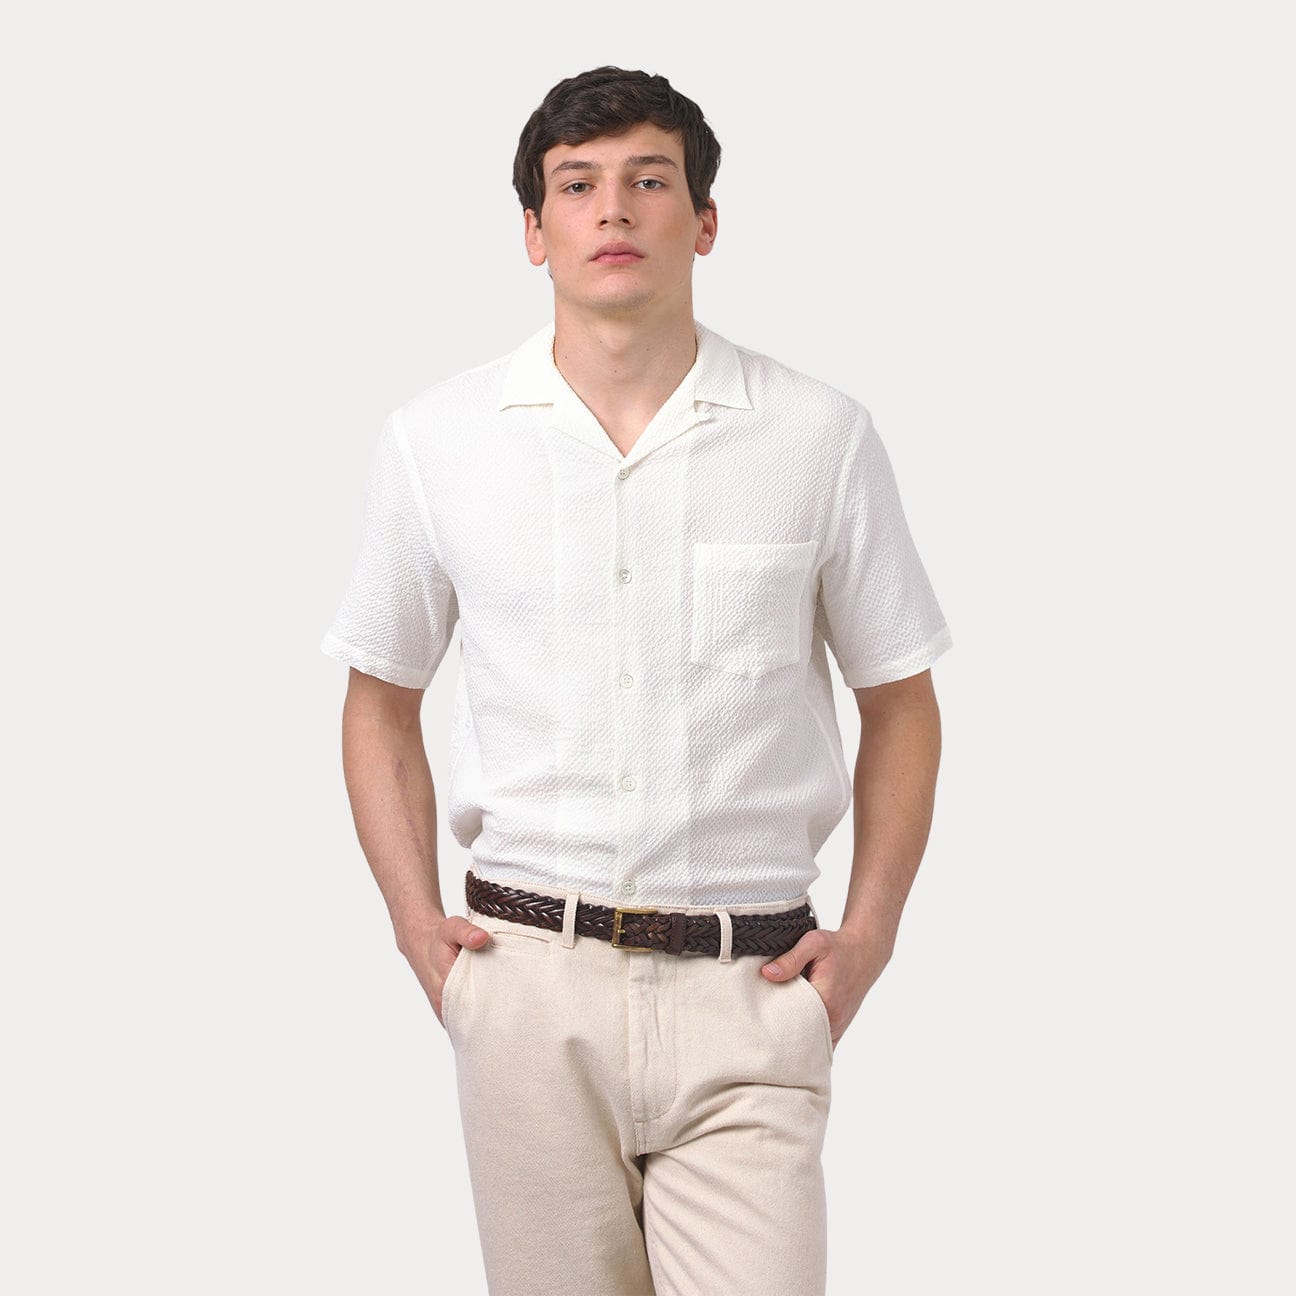 PORTUGUESE FLANNEL Camicia seersucker Bianco